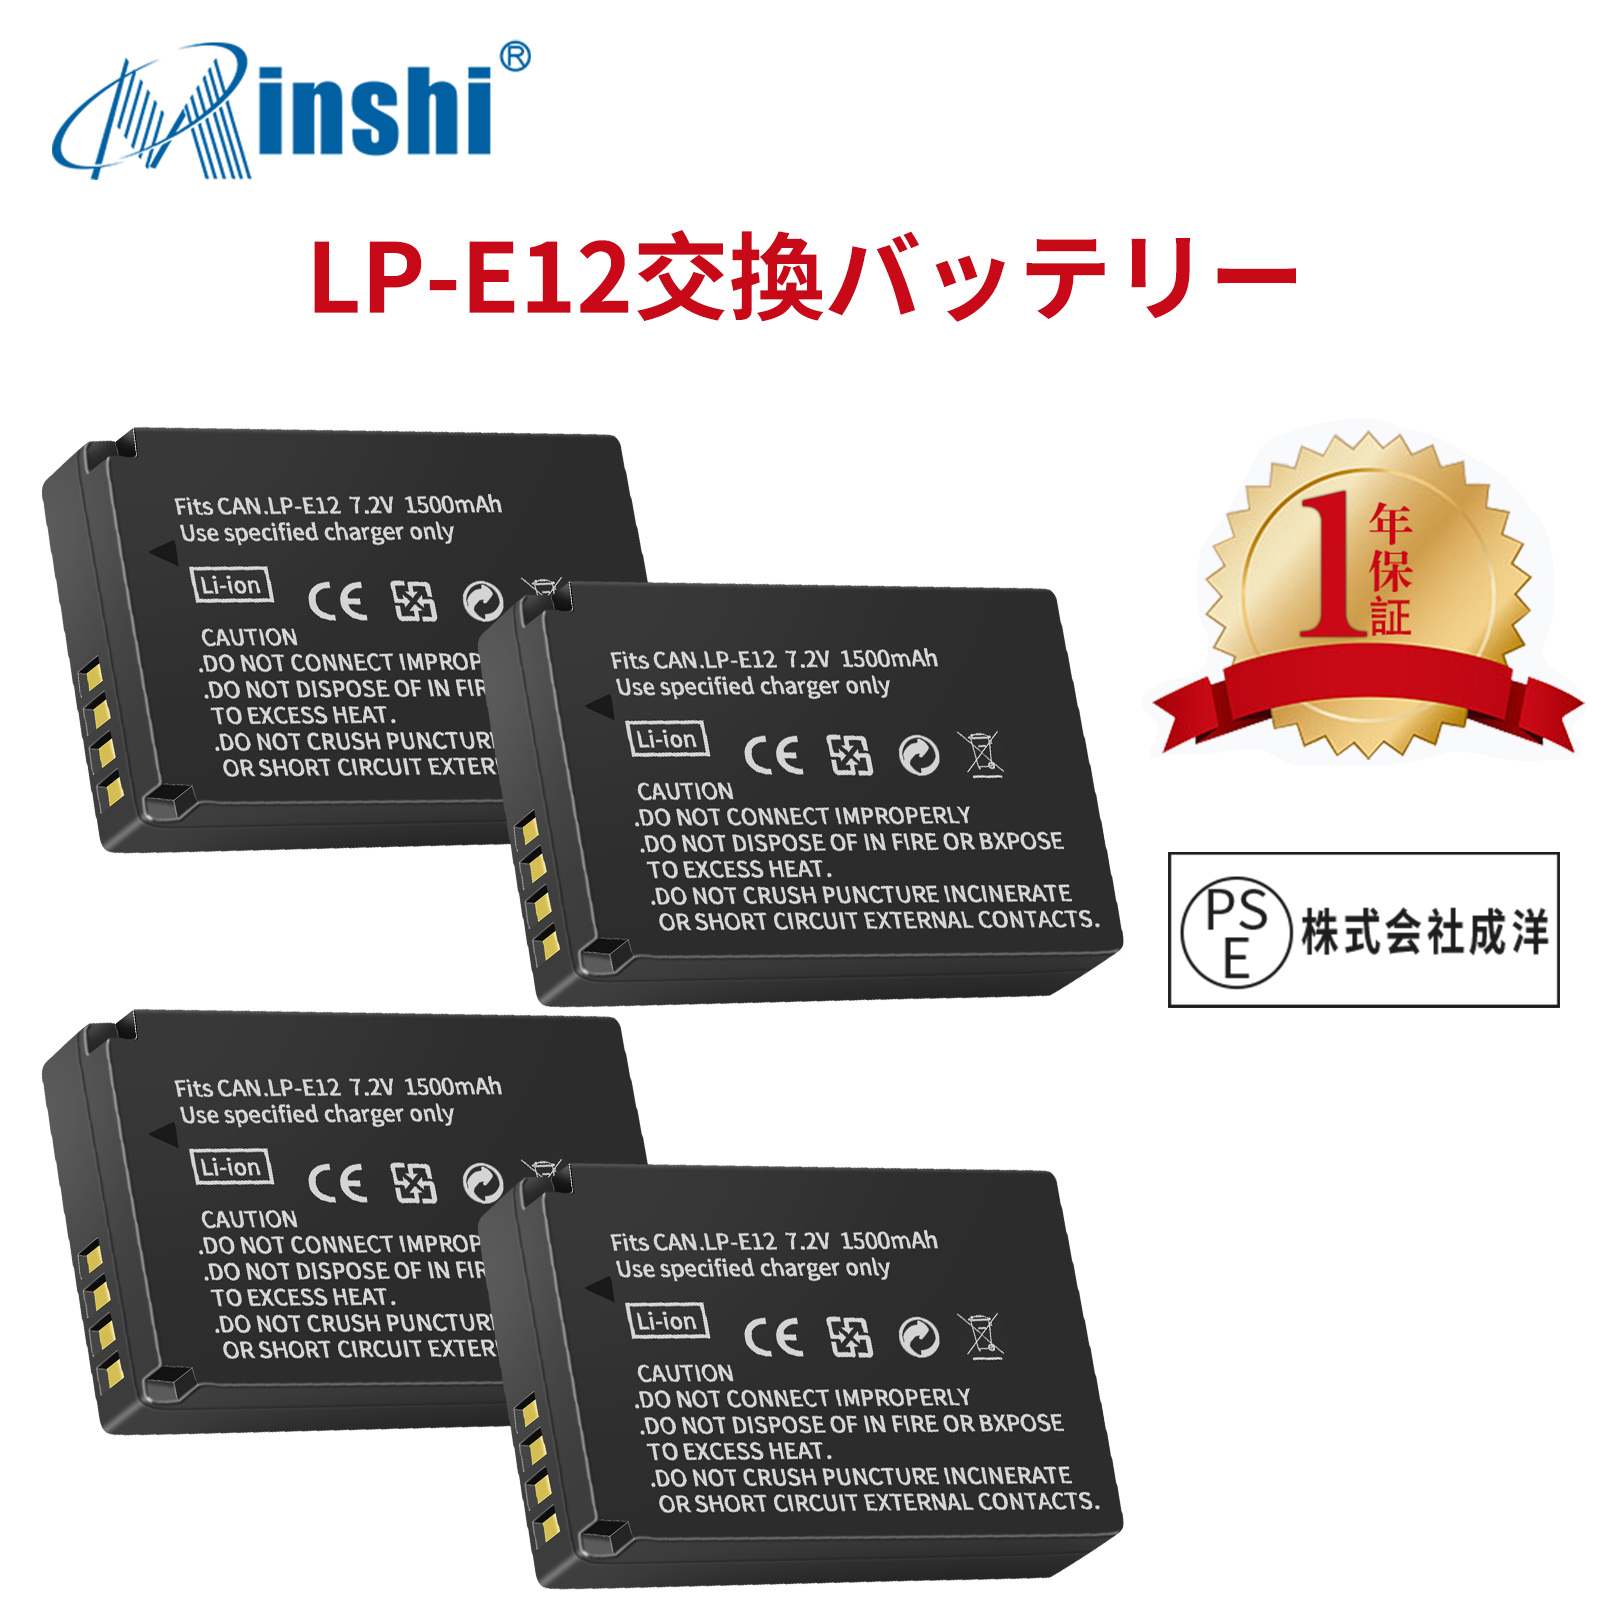 【4個セット】 minshi  EOS M、EOS M2  LP-E12  LP-E12 対応 互換バッテリー EOS M M100 M200 Kiss M X7 1500mAh  高品質交換用バッテリー